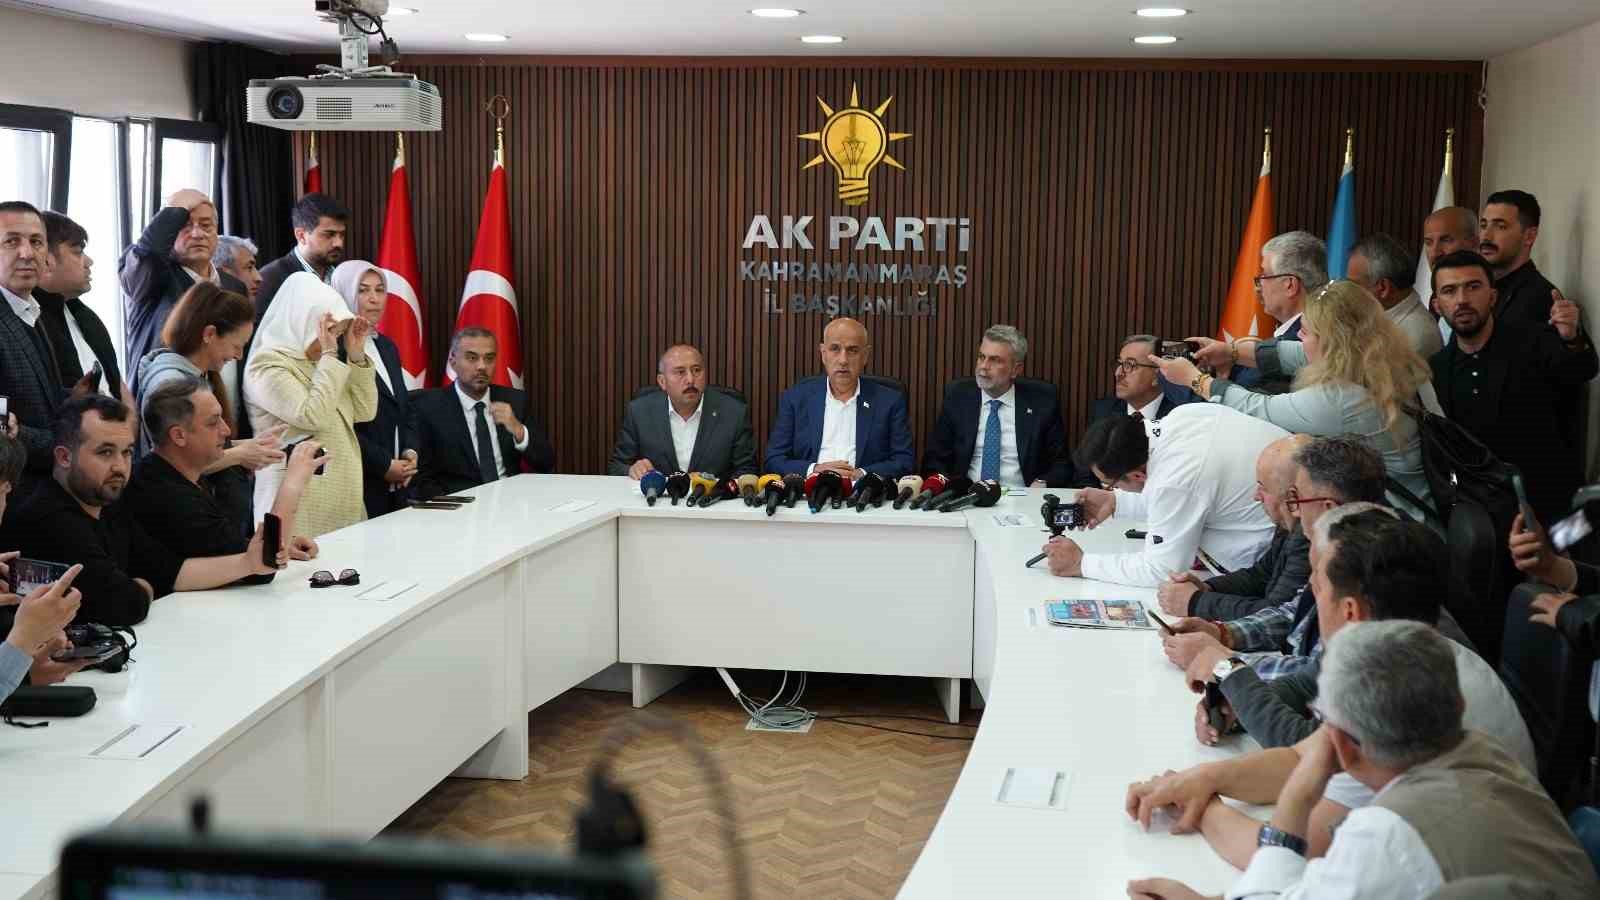 AK Parti Kahramanmaraş Milletvekili Kirişci: "Seçmenlerin iradesine büyük bir saygımız var"
